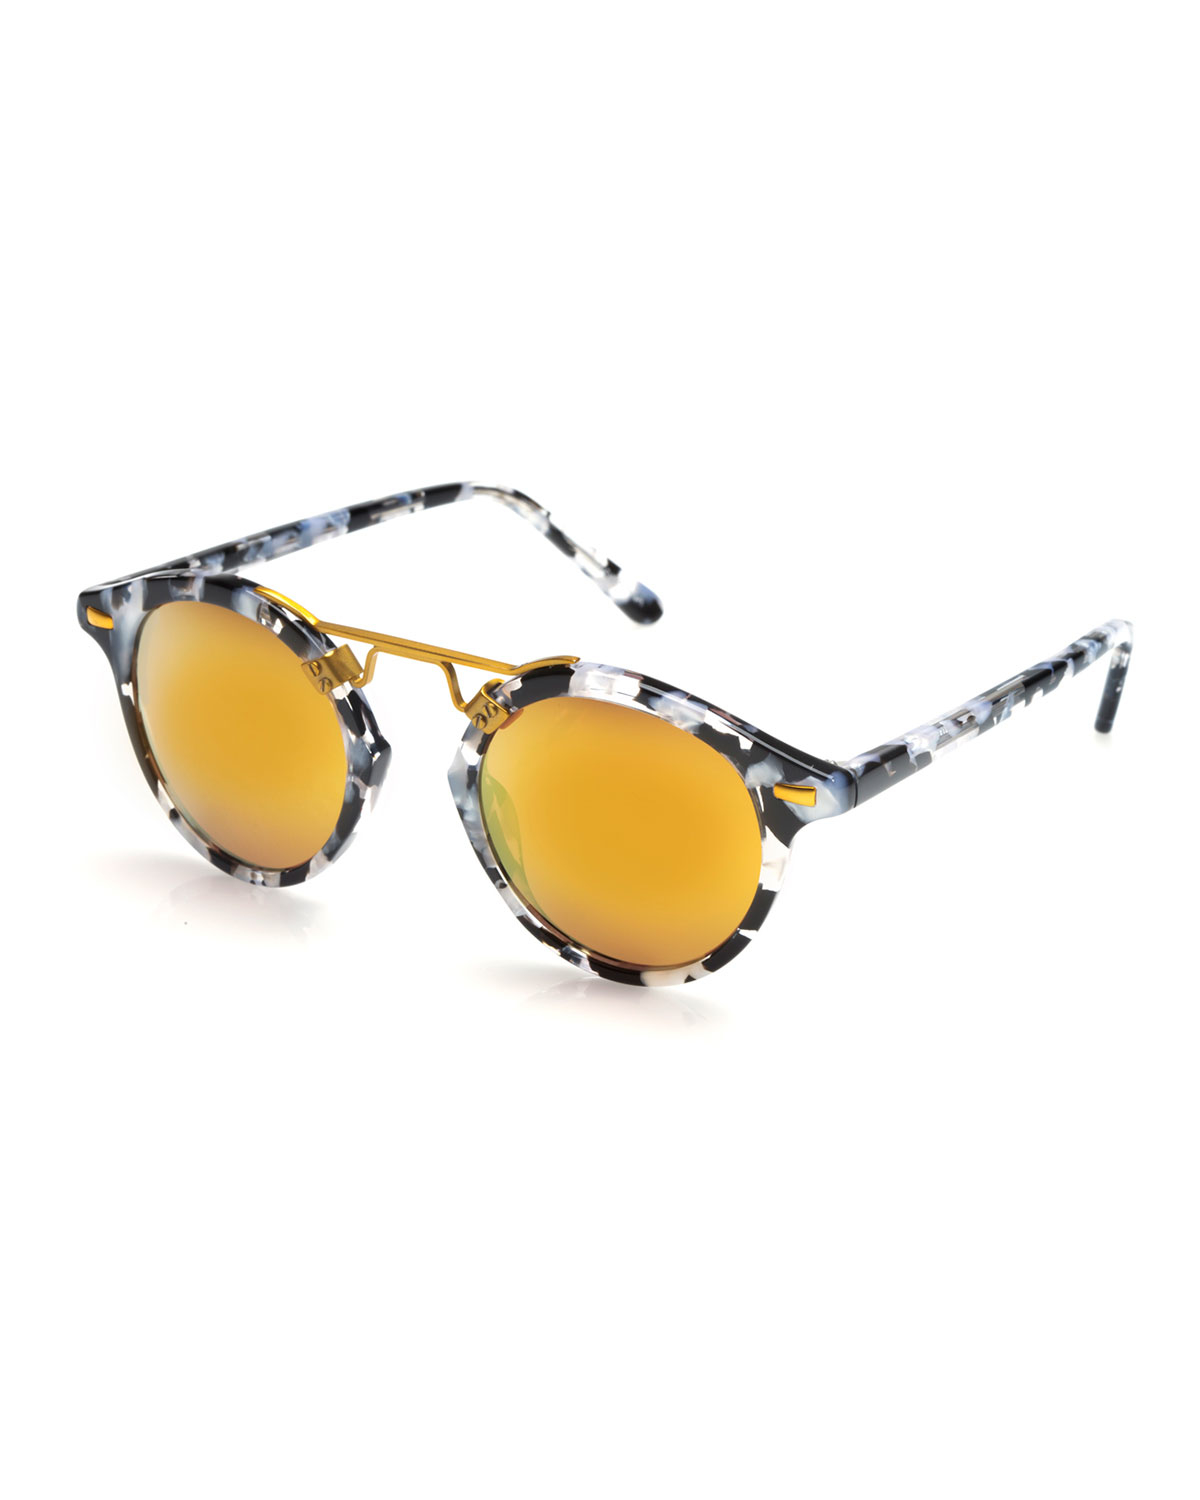 Lyst - Krewe St. Louis Mirrored Round Sunglasses